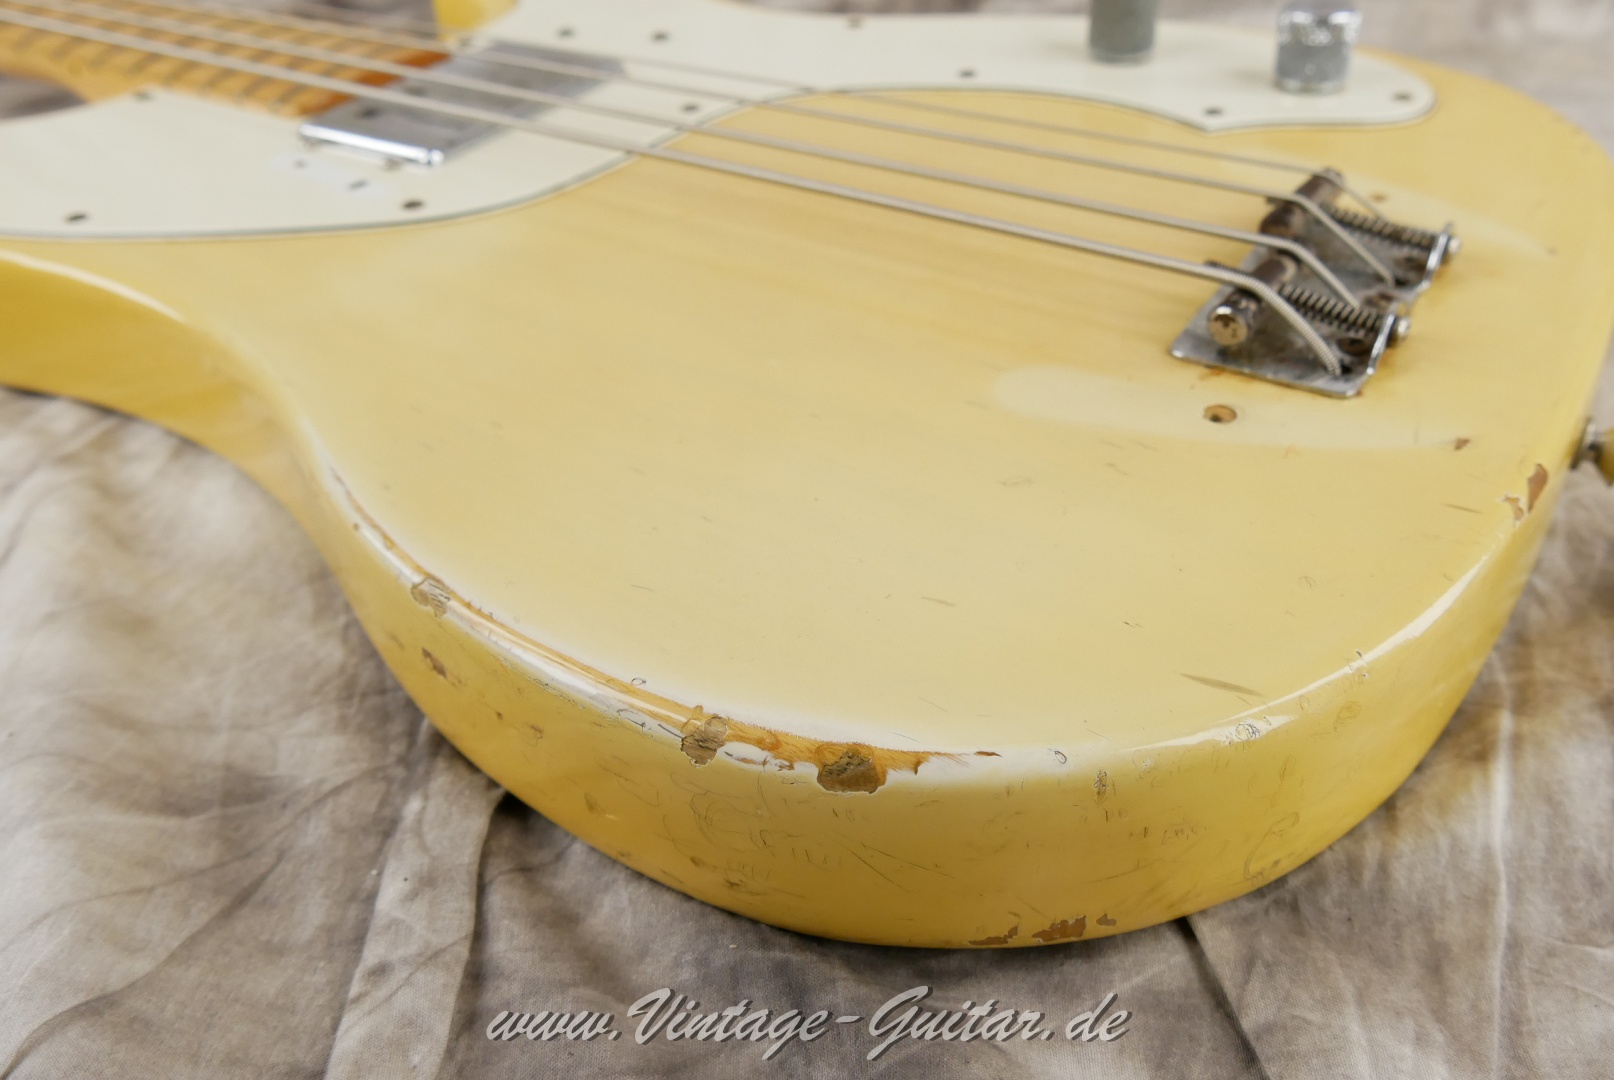 Fender-Telecaster-Bass-1972-015.JPG